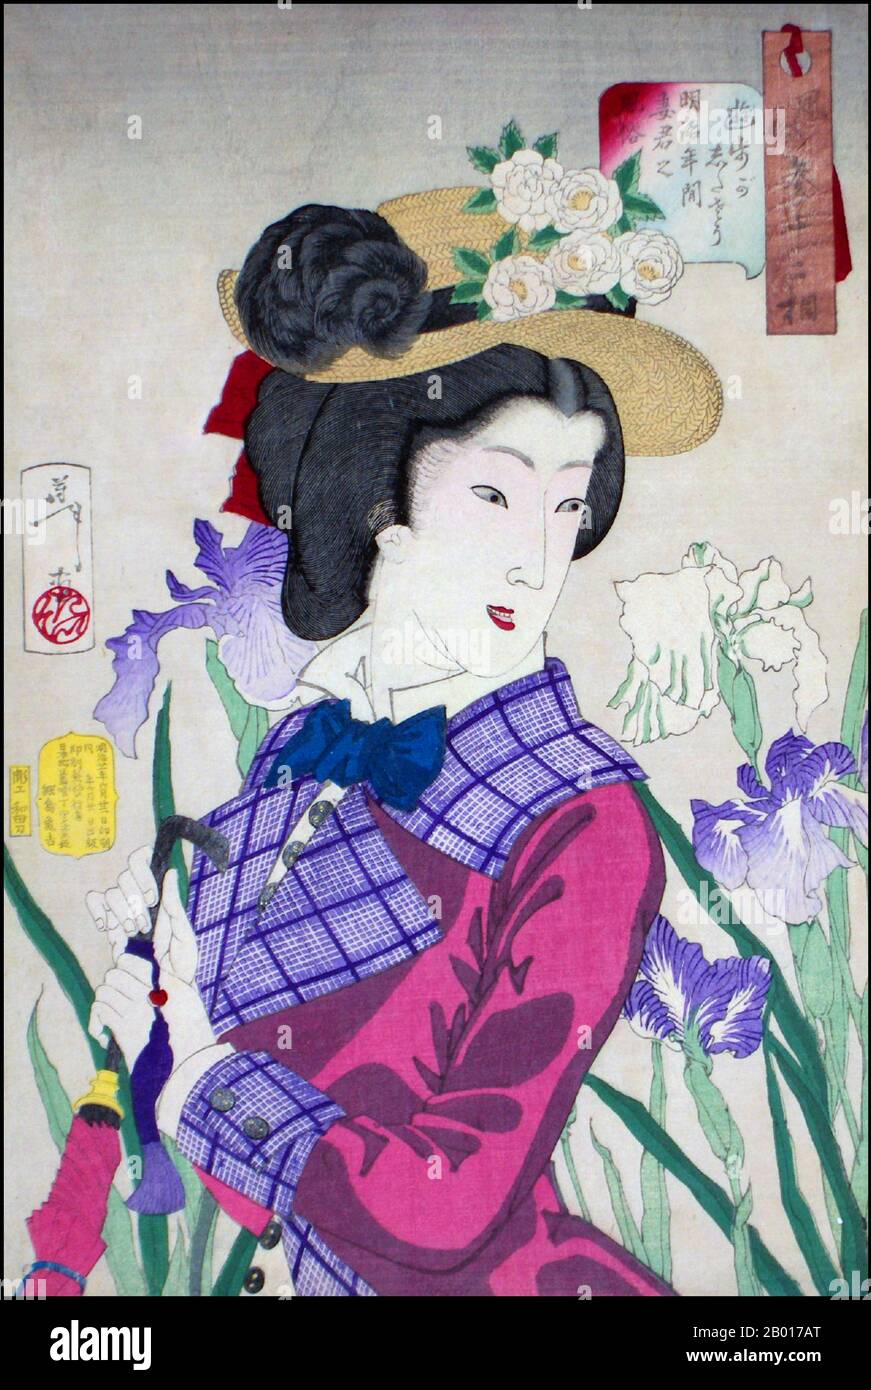 Giappone: 'Strailling: Una donna sposata alla moda del periodo medio Meiji vestita in stile occidentale'. Ukiyo-e woodblock print by Tsukioka Yoshitoshi (30 aprile 1839 - 9 giugno 1892), 1888. Tsukioka Yoshitoshi, anche chiamato Taiso Yoshitoshi, era un artista giapponese. È ampiamente riconosciuto come l'ultimo grande maestro di Ukiyo-e, un tipo di stampa giapponese a blocchi di legno. È inoltre considerato uno dei più grandi innovatori della forma. La sua carriera ha abbracciato due epoche – gli ultimi anni del Giappone feudale, e i primi anni del Giappone moderno dopo la Restaurazione Meiji. Foto Stock